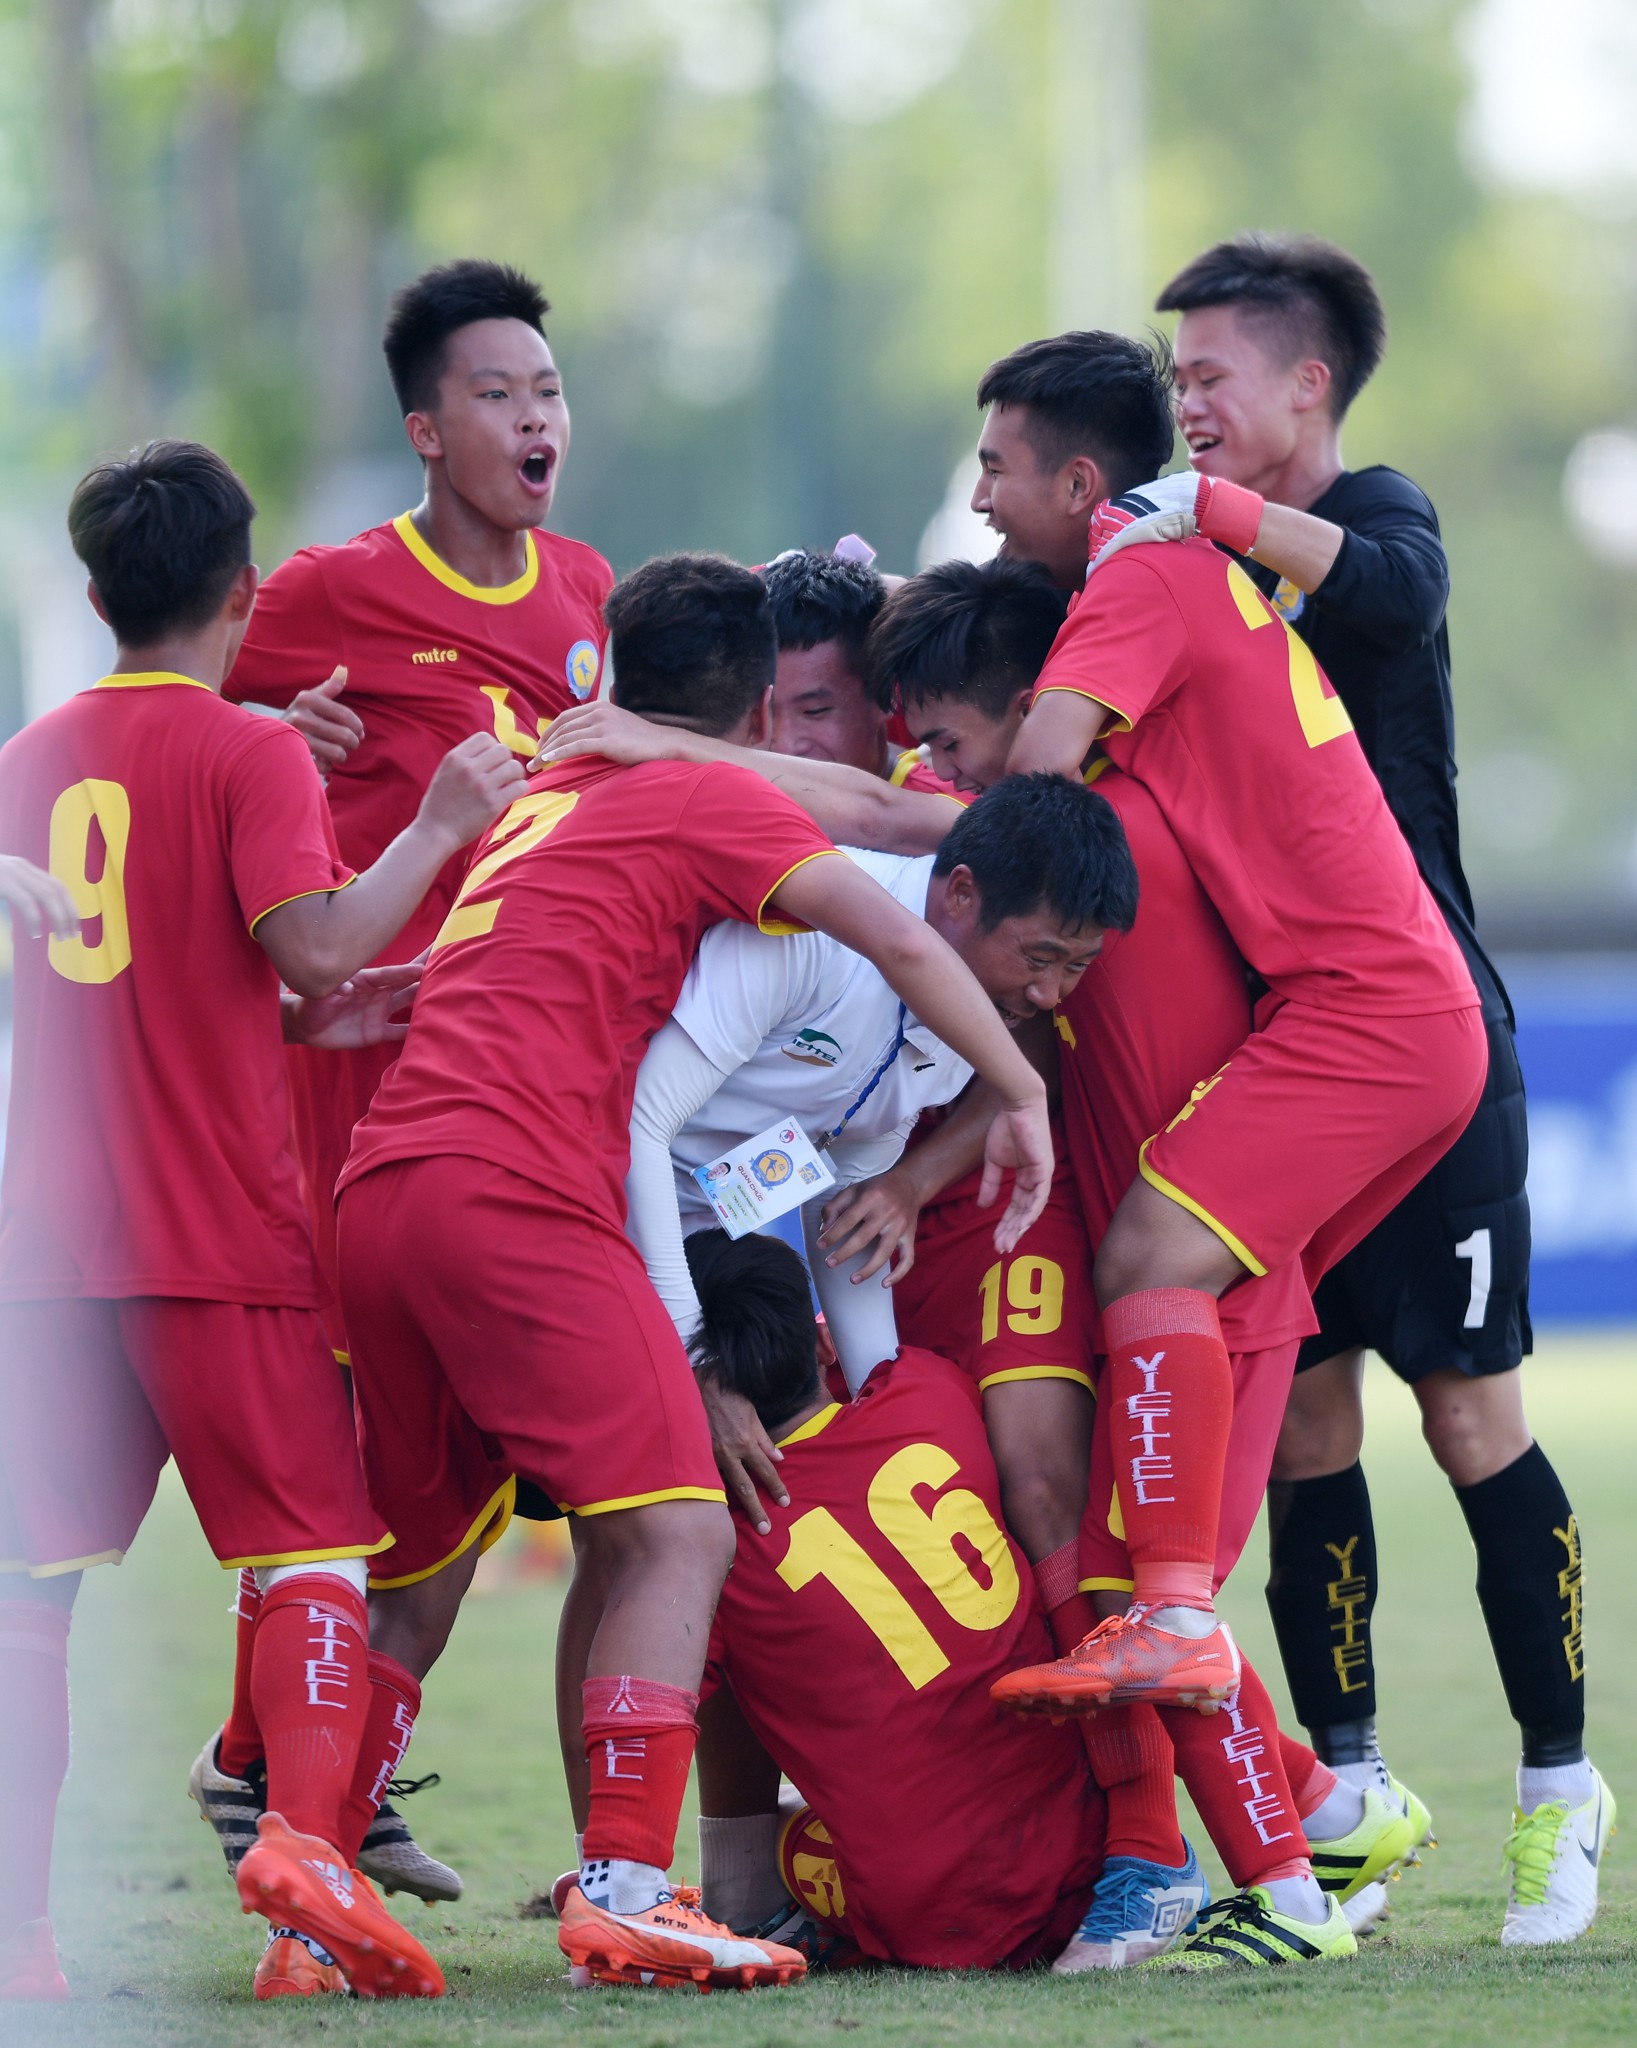 Giọt nước mắt thua cuộc trái chiều niềm vui chiến thắng trong trận chung kết U17 Quốc gia 2018 - Ảnh 6.